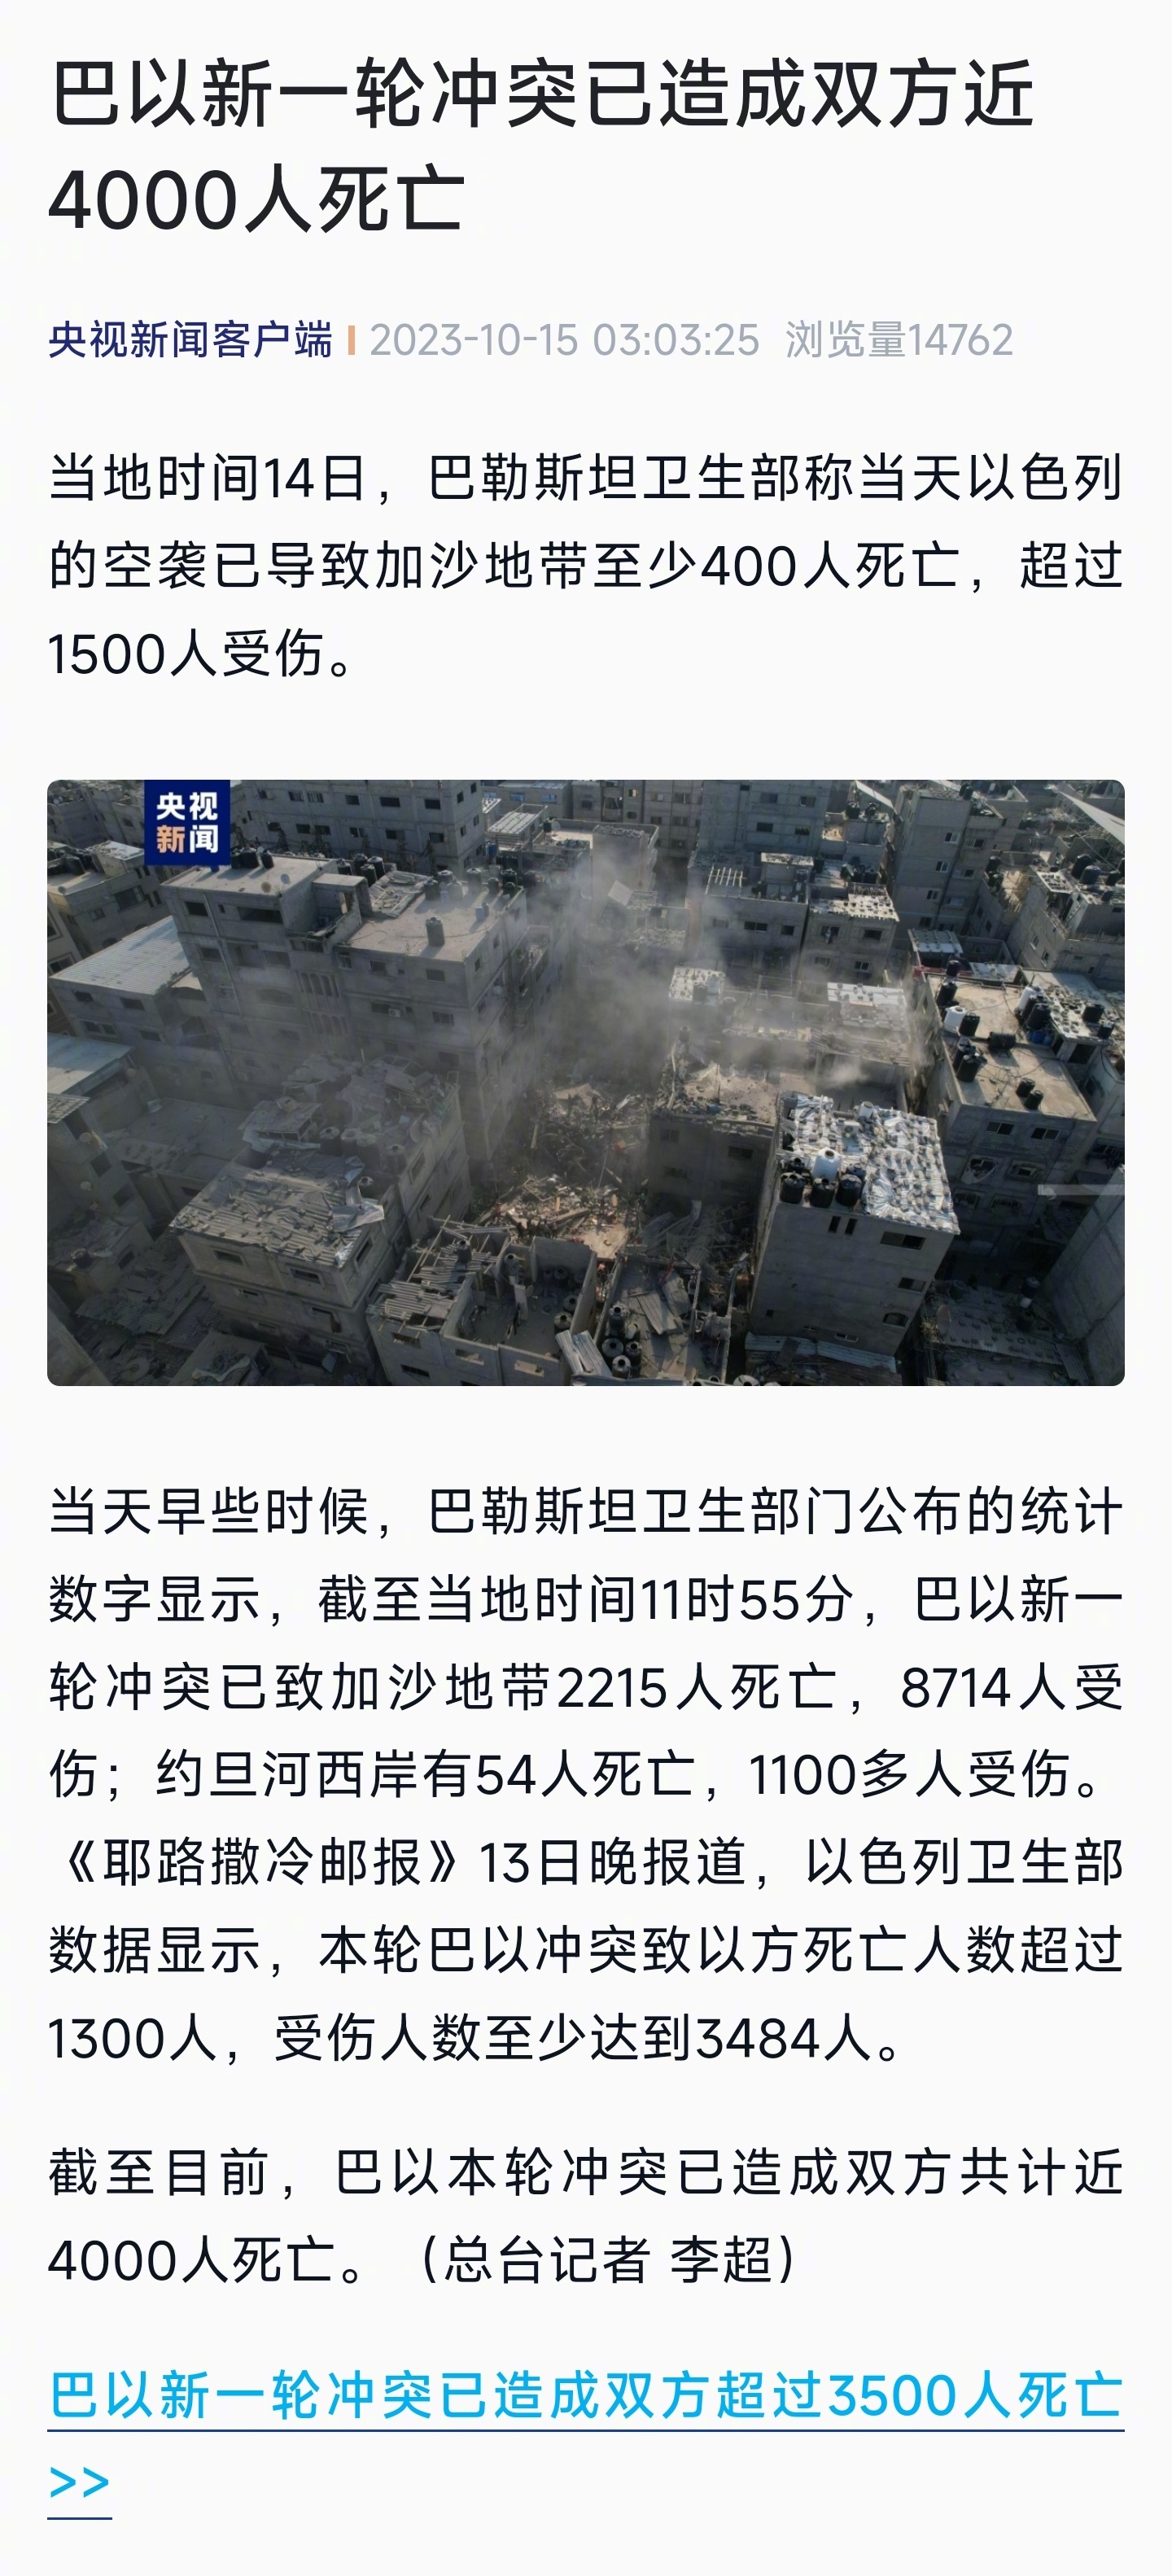 本轮冲突已导致巴以双方超1.98万人死亡-搜狐大视野-搜狐新闻